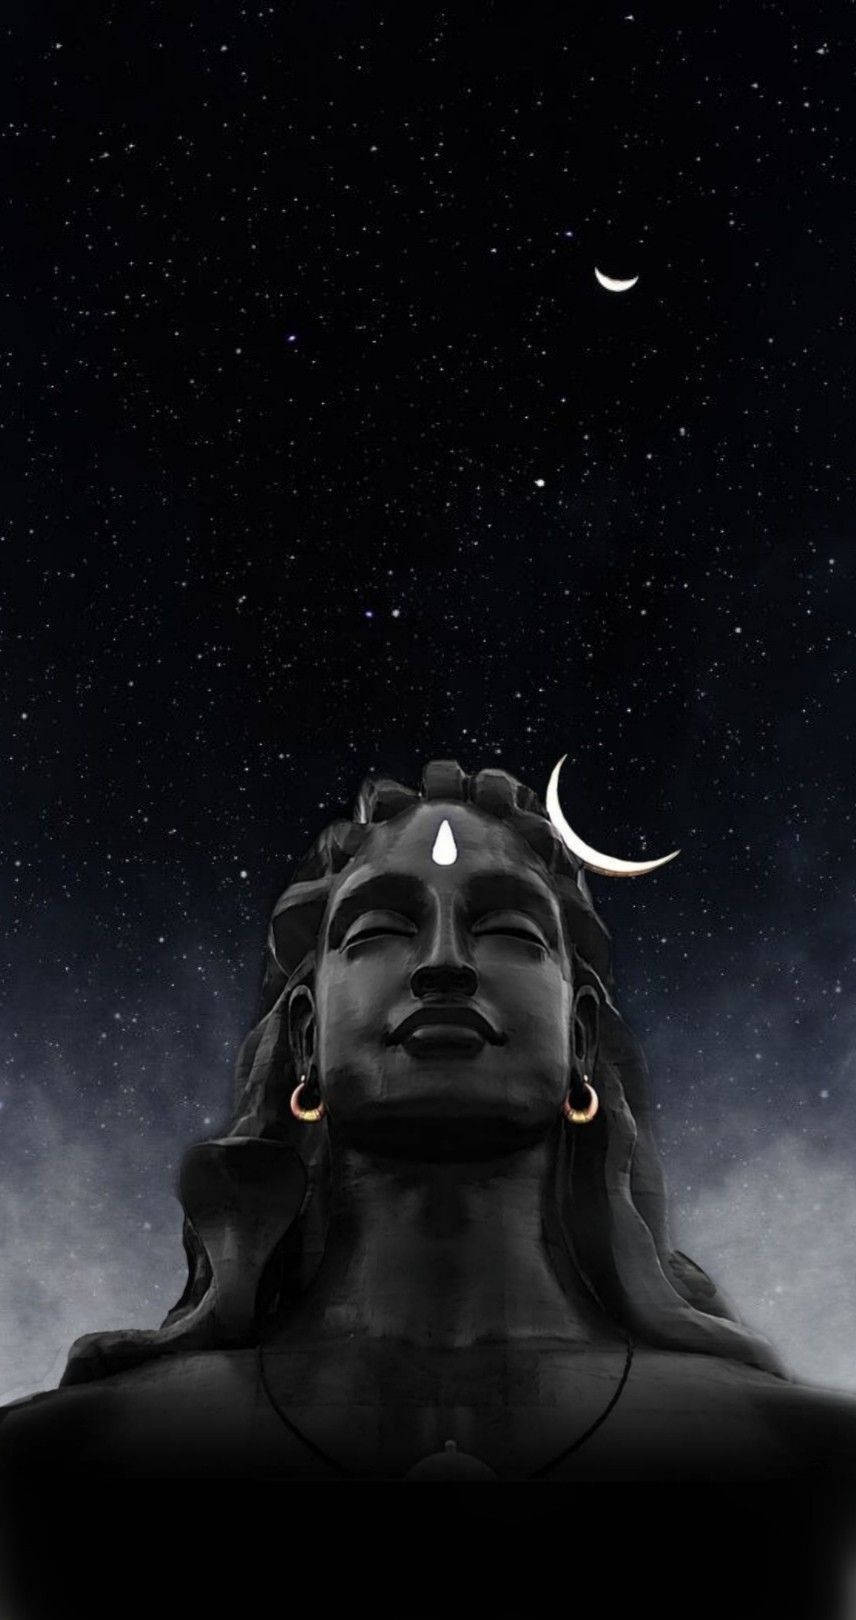 Mahadevrudra Avatar Büste På Natten. Wallpaper